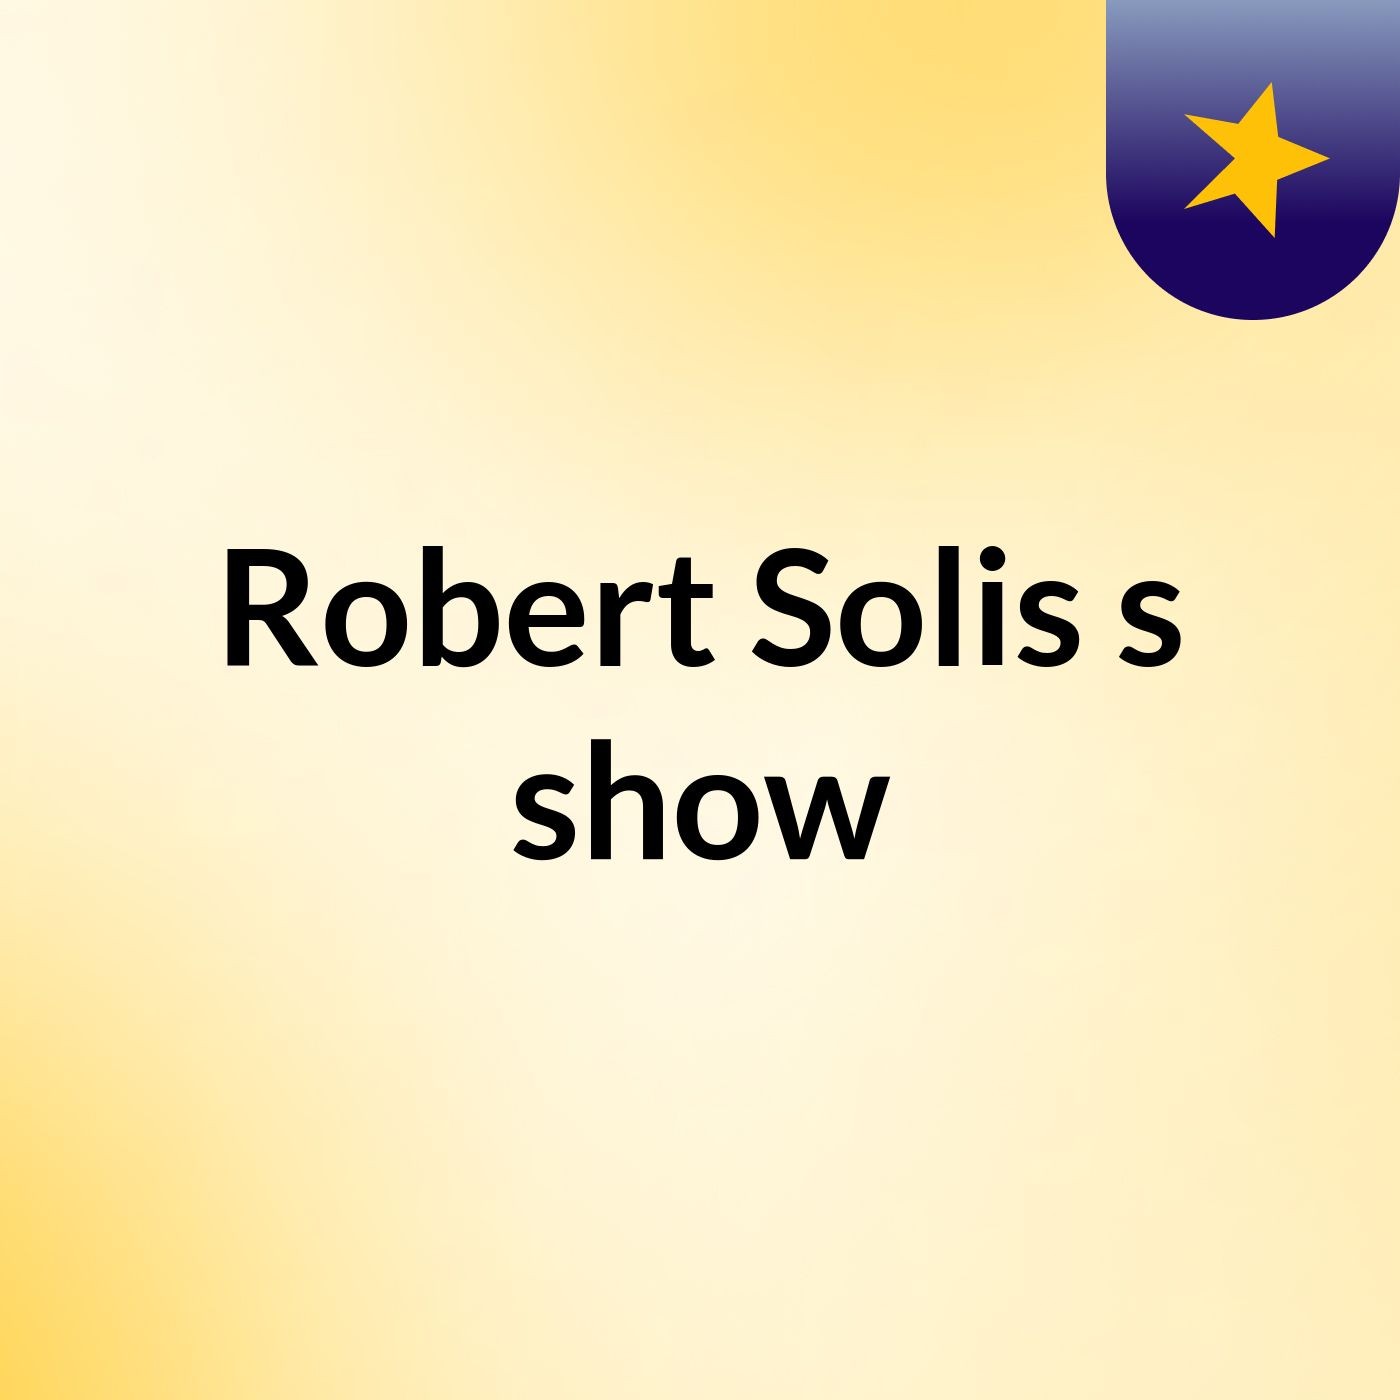 Robert Solis's show